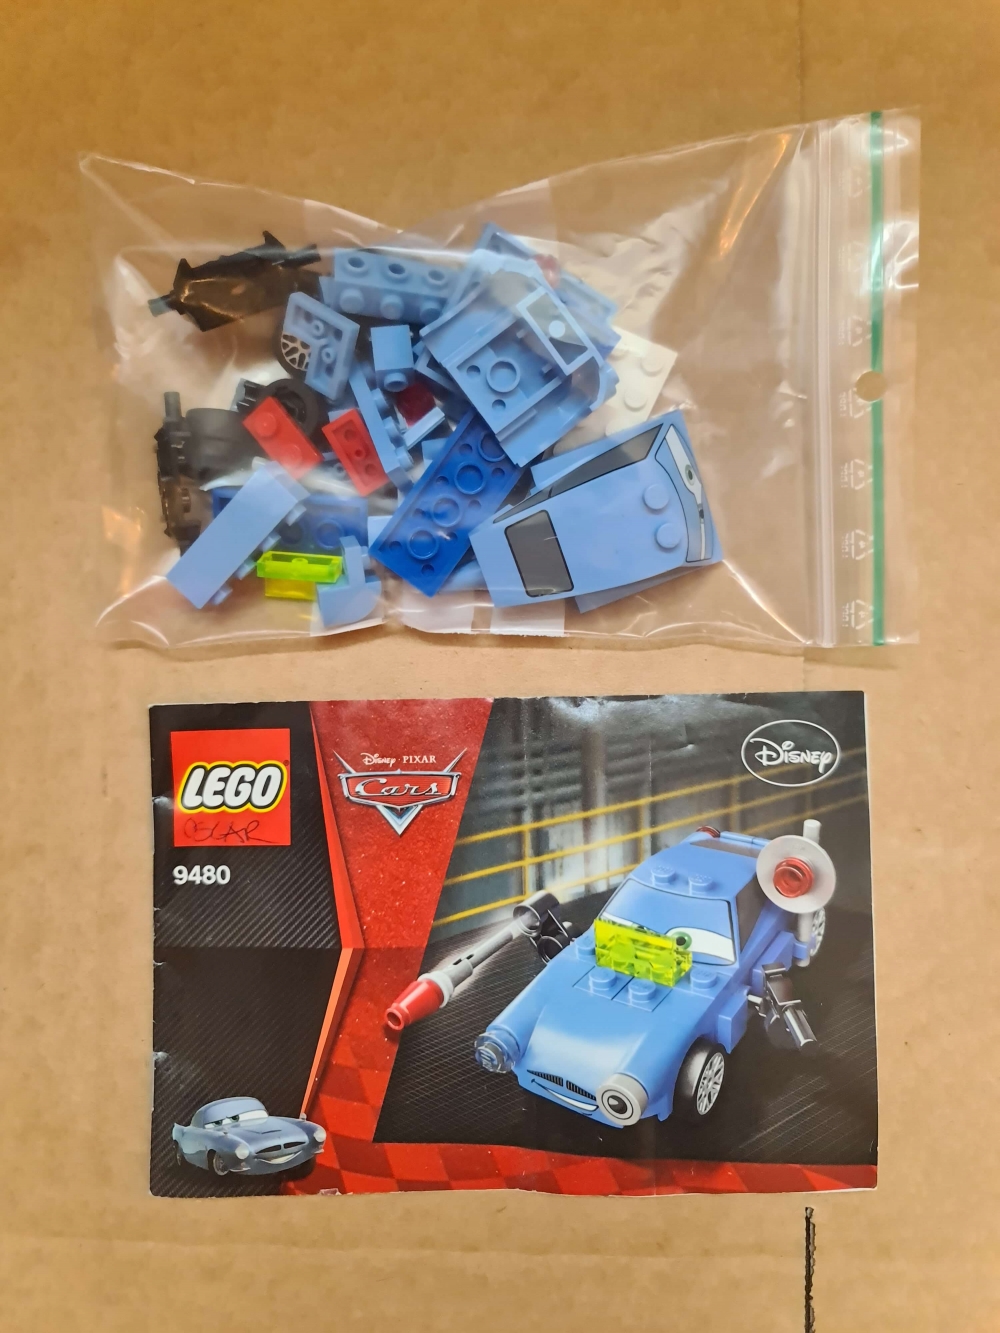 Sett 9480 fra Lego Cars : Cars 2 serien.
Meget pent.
Komplett med manual.